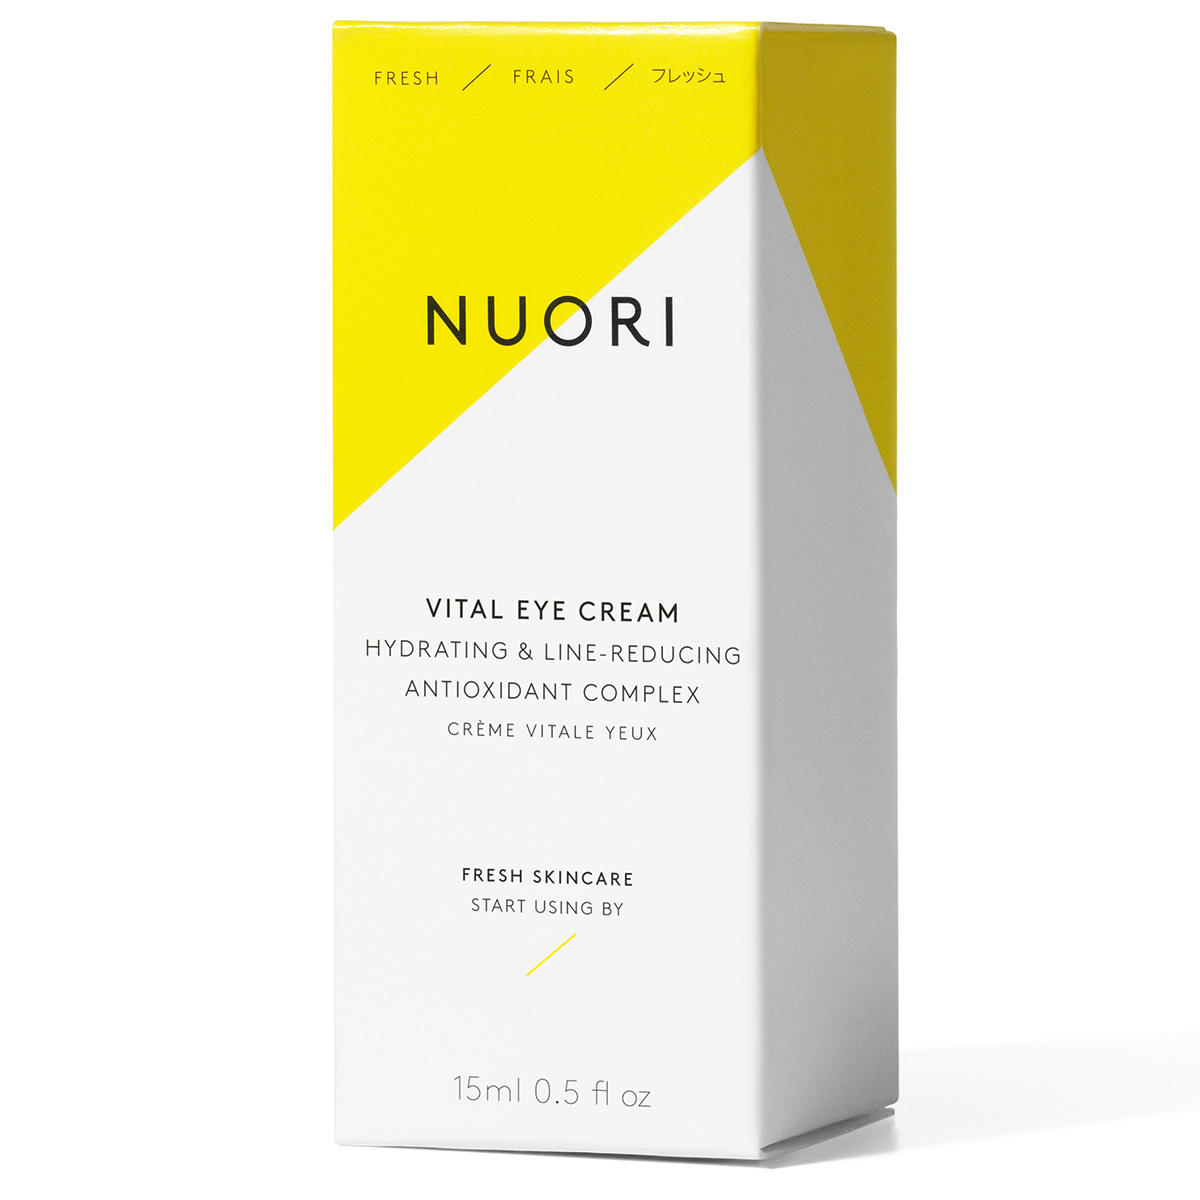 NUORI Vital Eye Cream 15 ml - 2